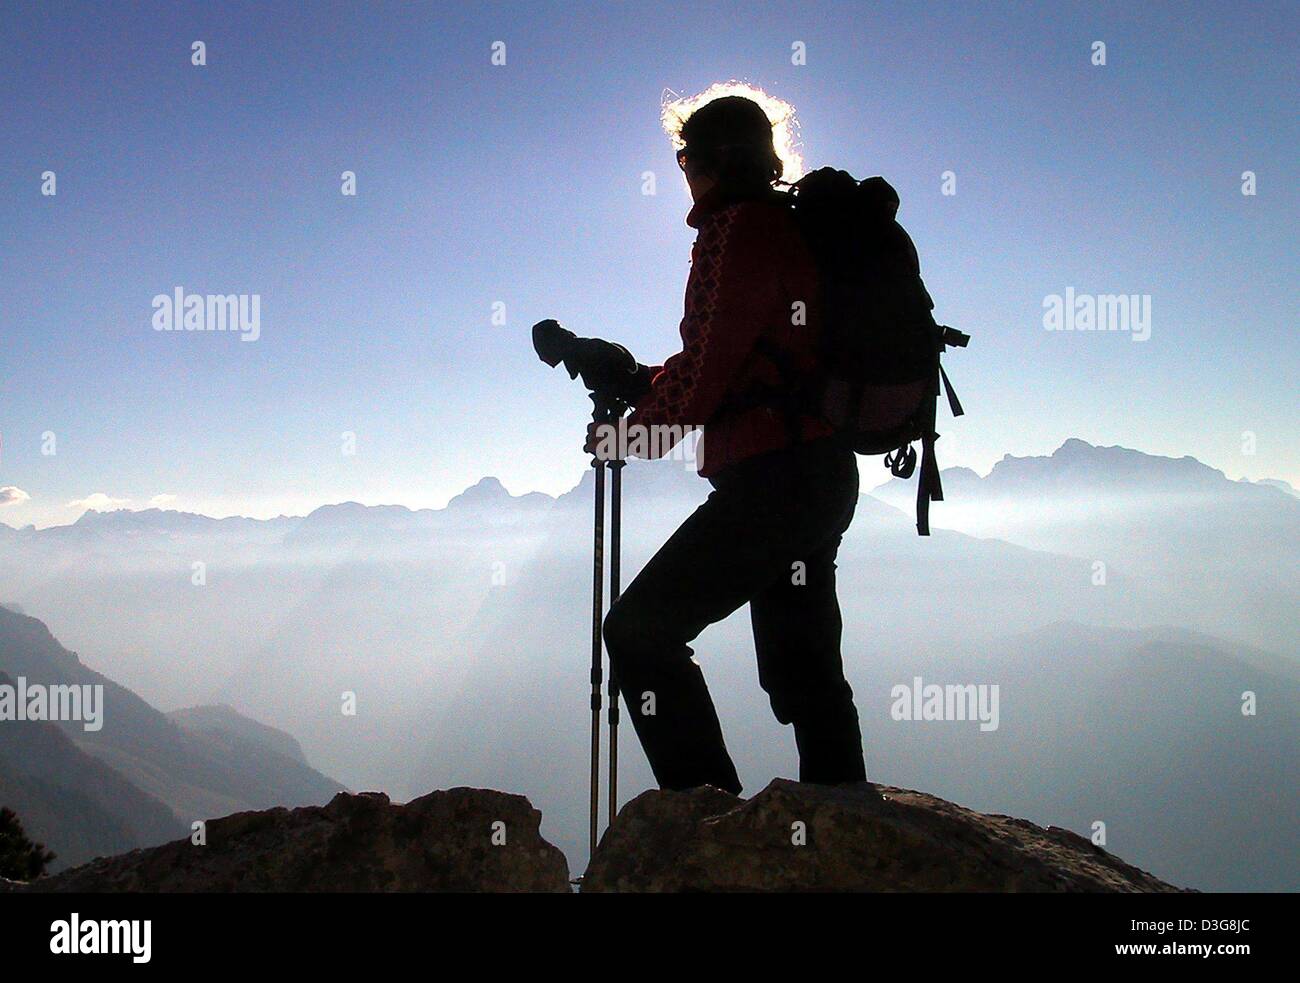 (Dpa) - un montañero se encuentra en el pico de la montaña Kehlstein y disfruta de las impresionantes vistas a temperaturas de 8 grados centígrados y radiante sol en Berchtesgarden, Alemania, 16 de octubre de 2003. Foto de stock